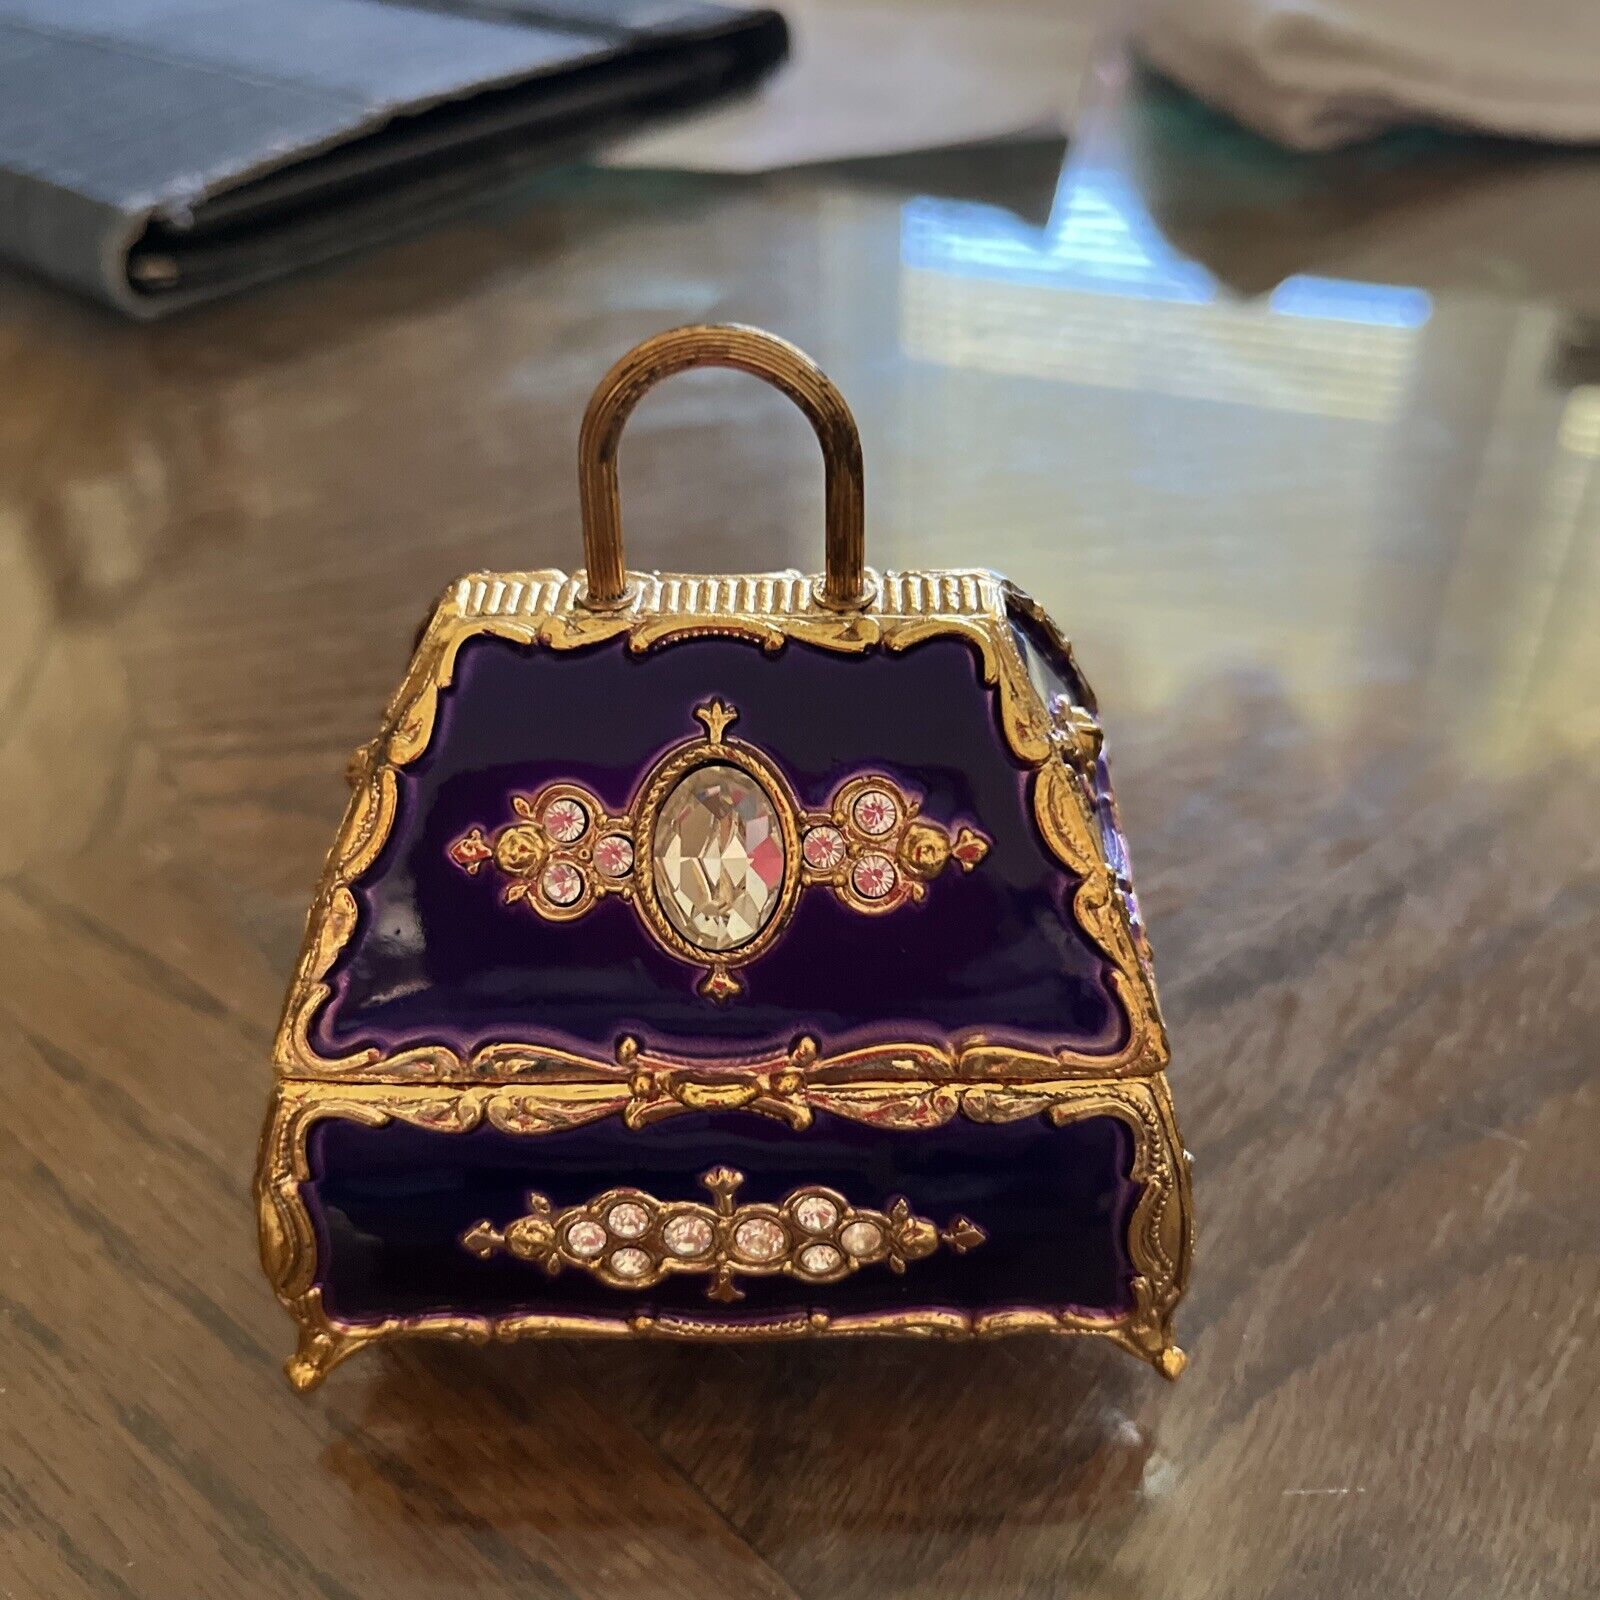 Royal Blue Handbag shaped Music Box by Splendid